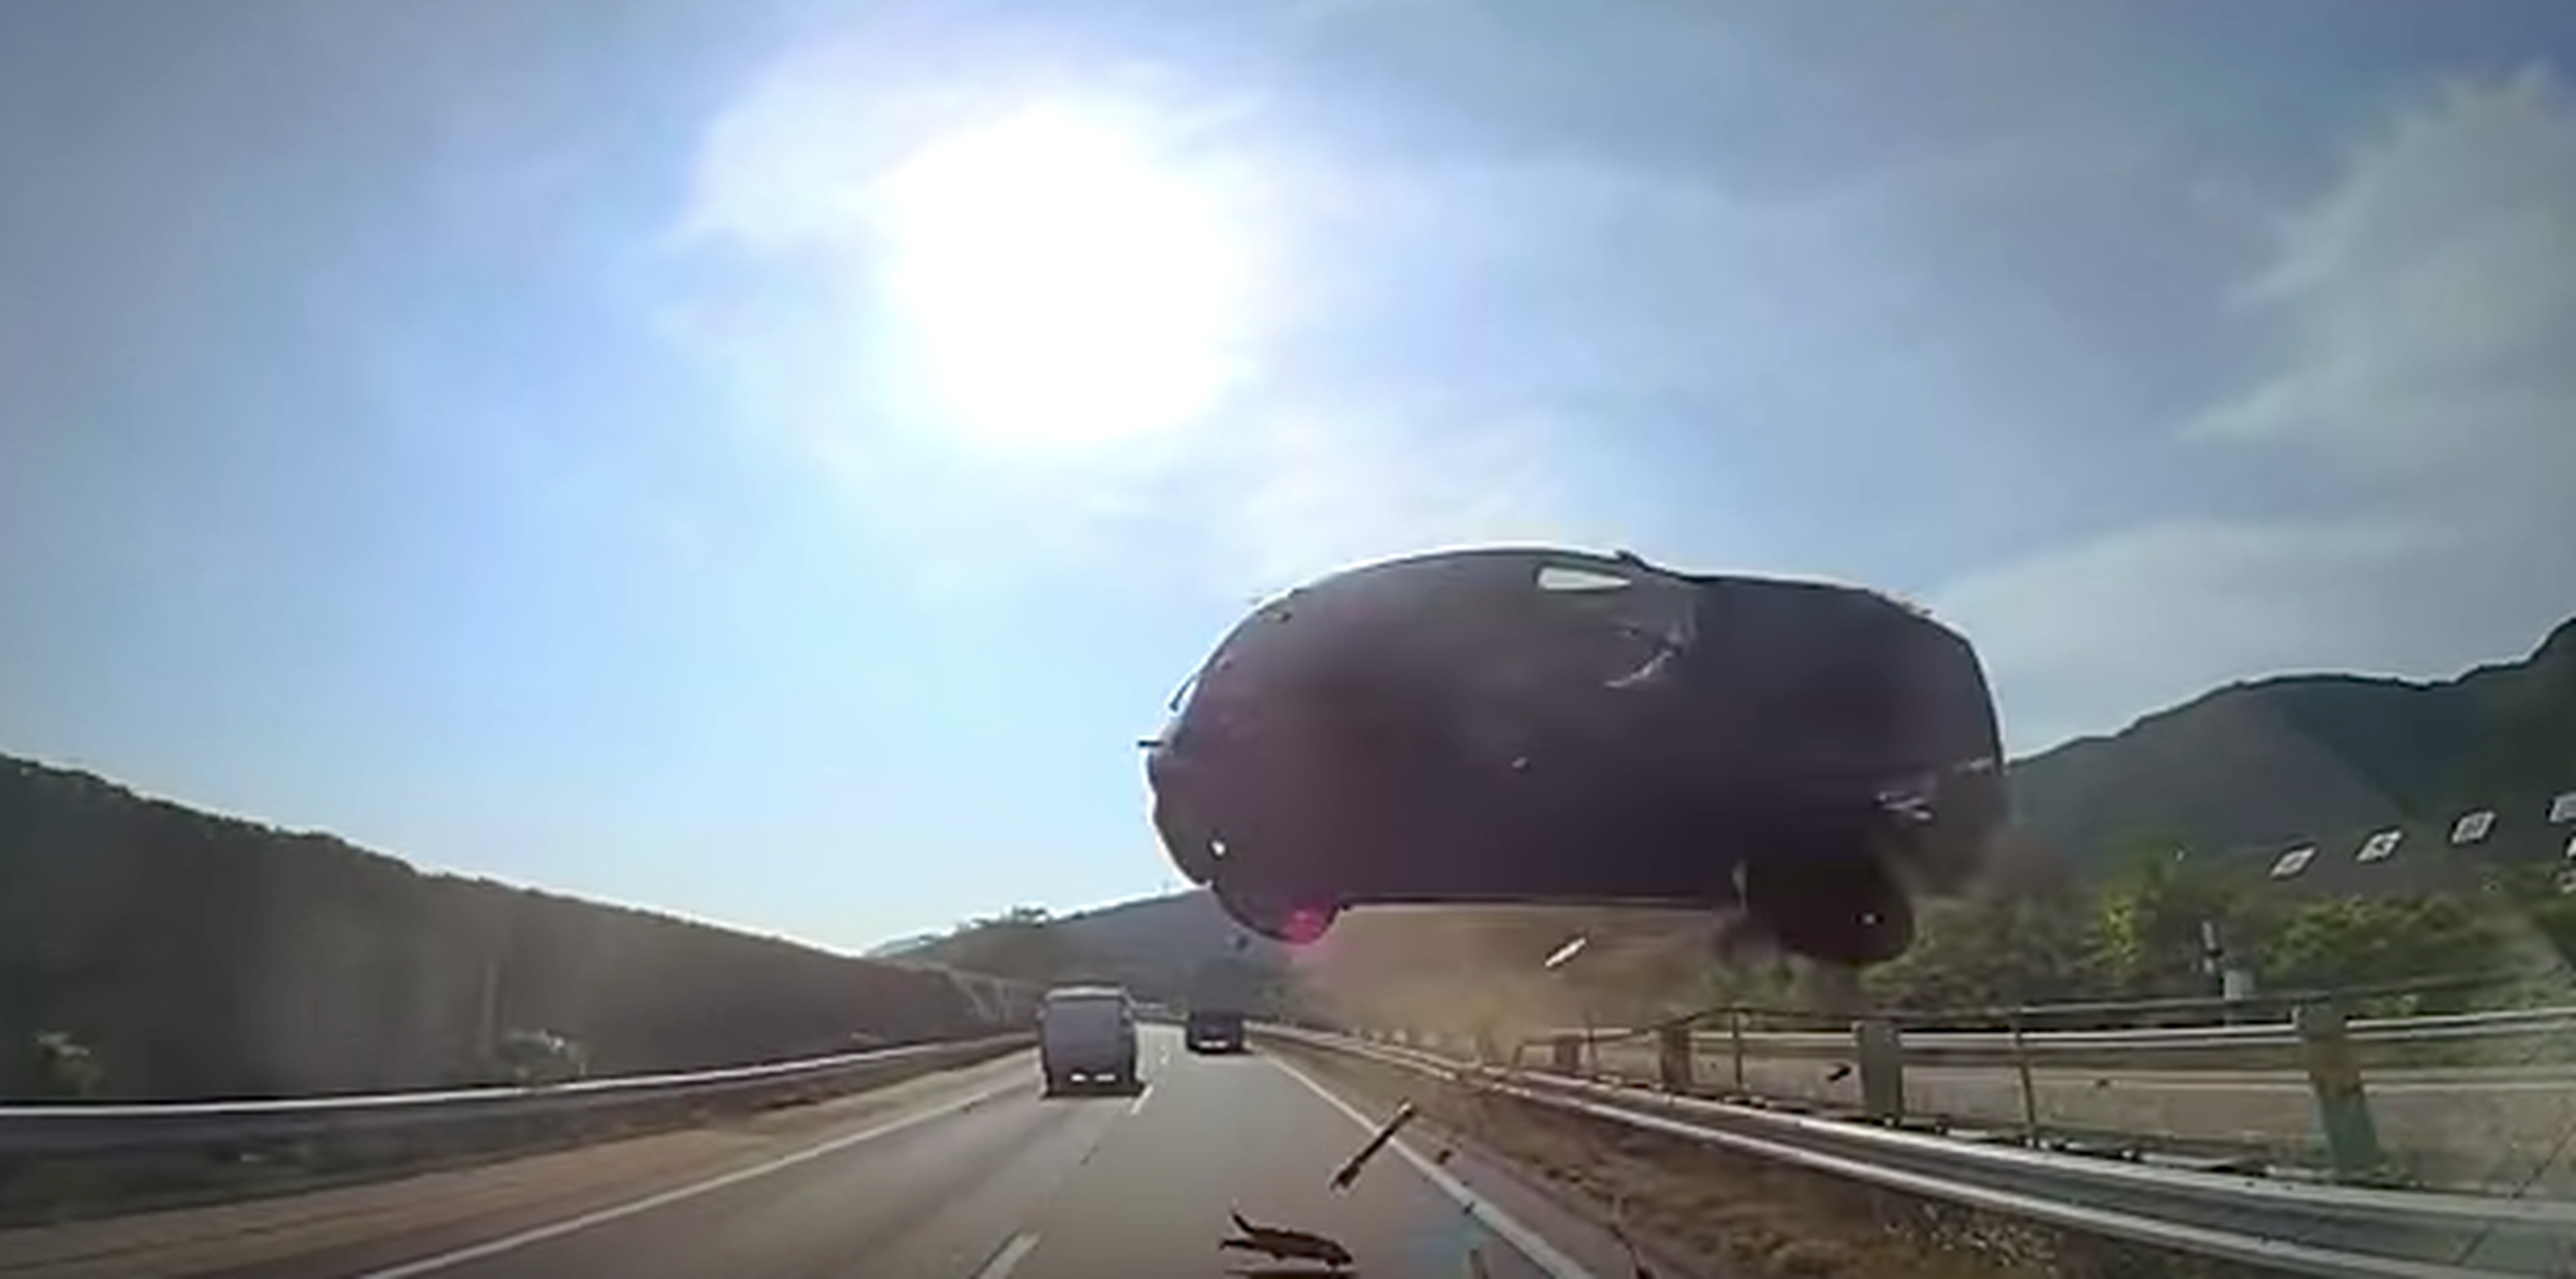 Vídeo escalofriante del día: coche volador choca contra bus